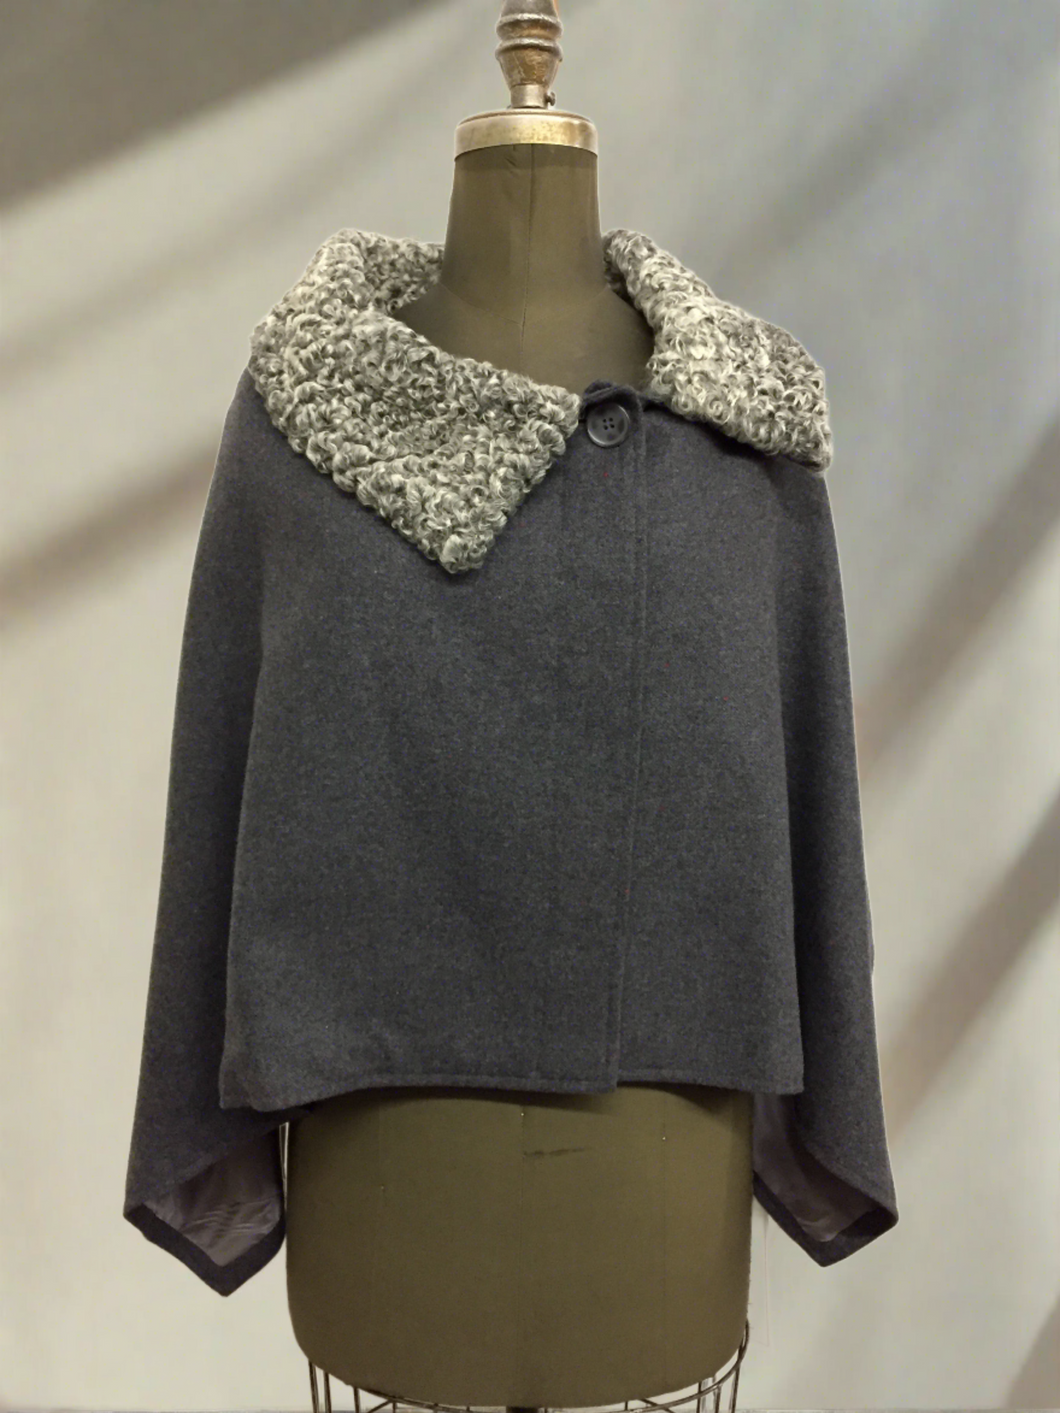 Alexandra Short Capelette - 100% Merino Wool - Persian Lamb Collar